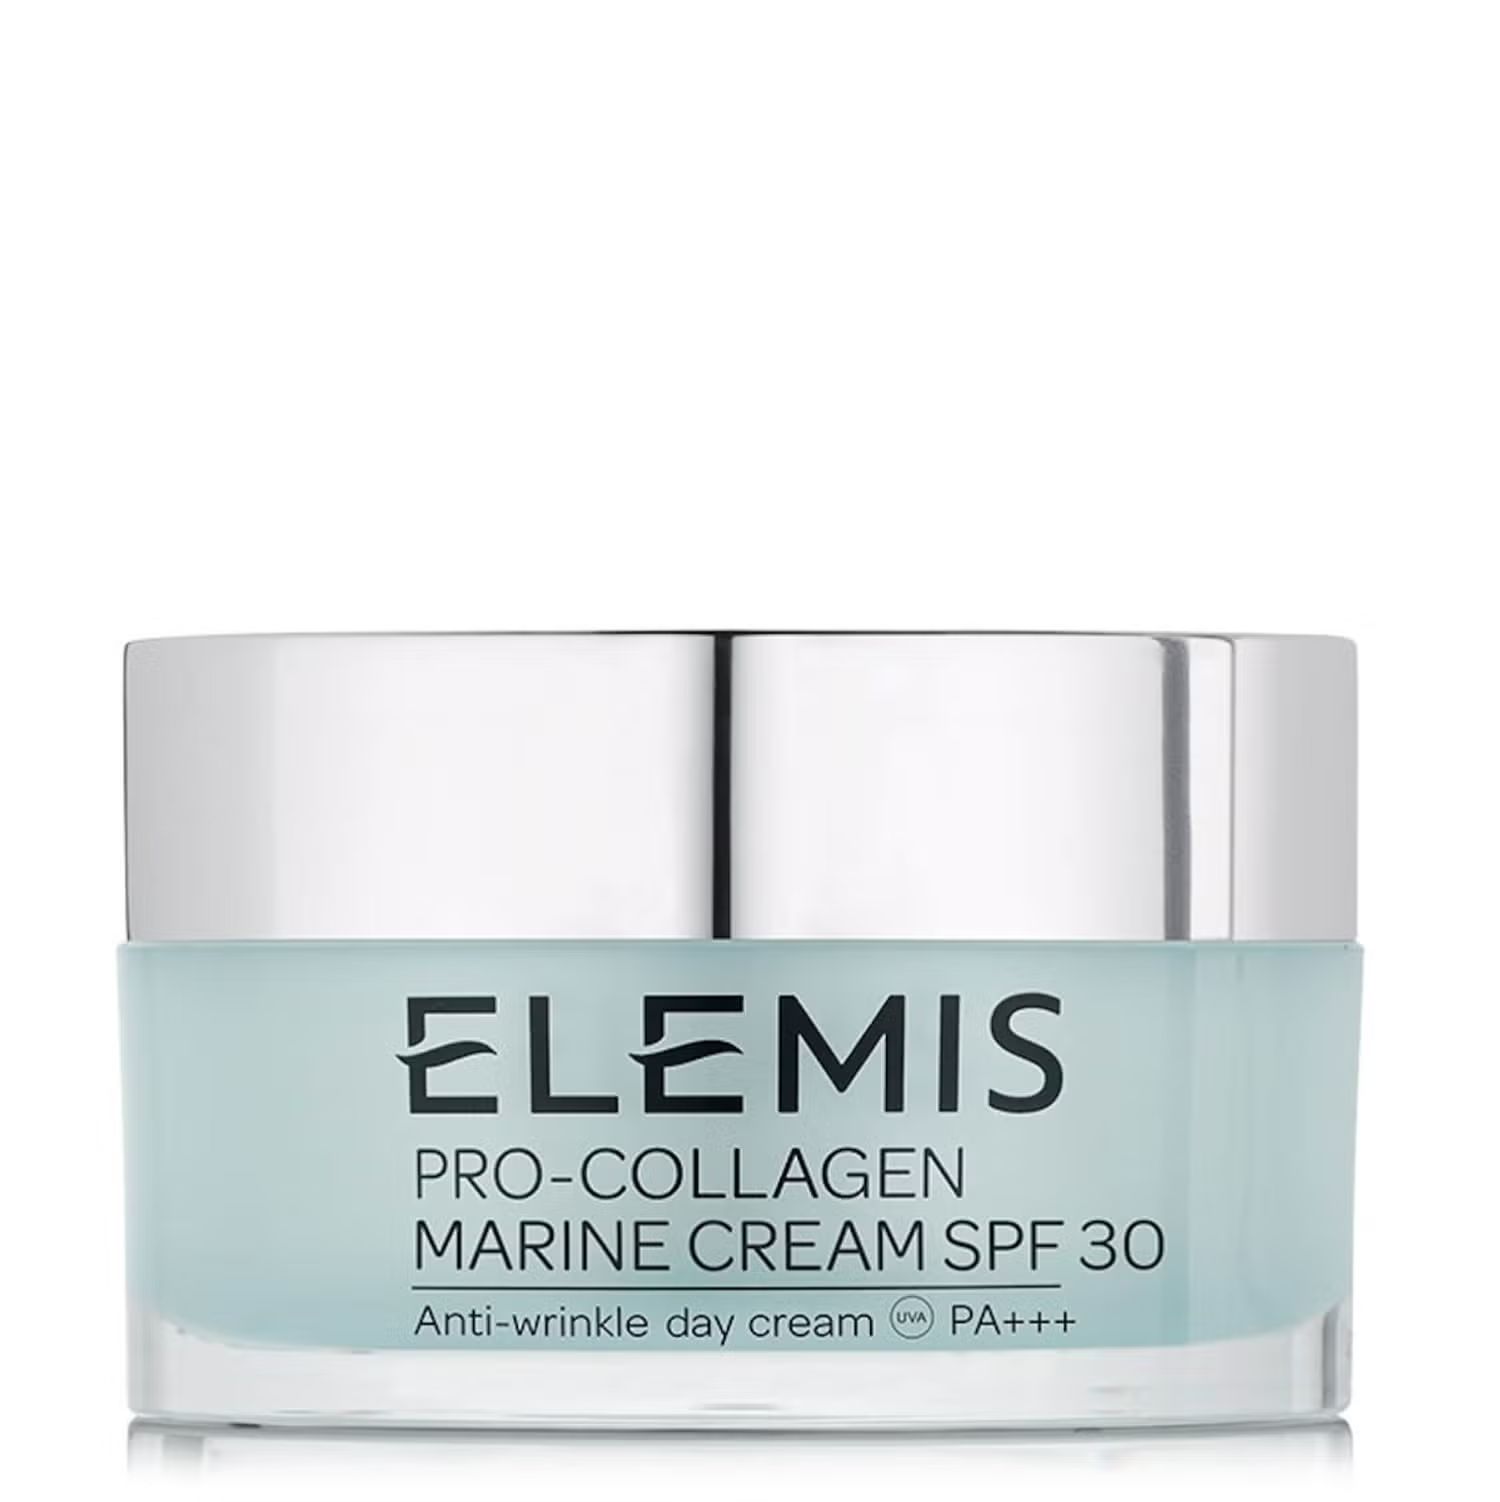 ELEMIS Pro-Collagen Marine Cream SPF 30 (1.6 fl. oz.) | Dermstore (US)